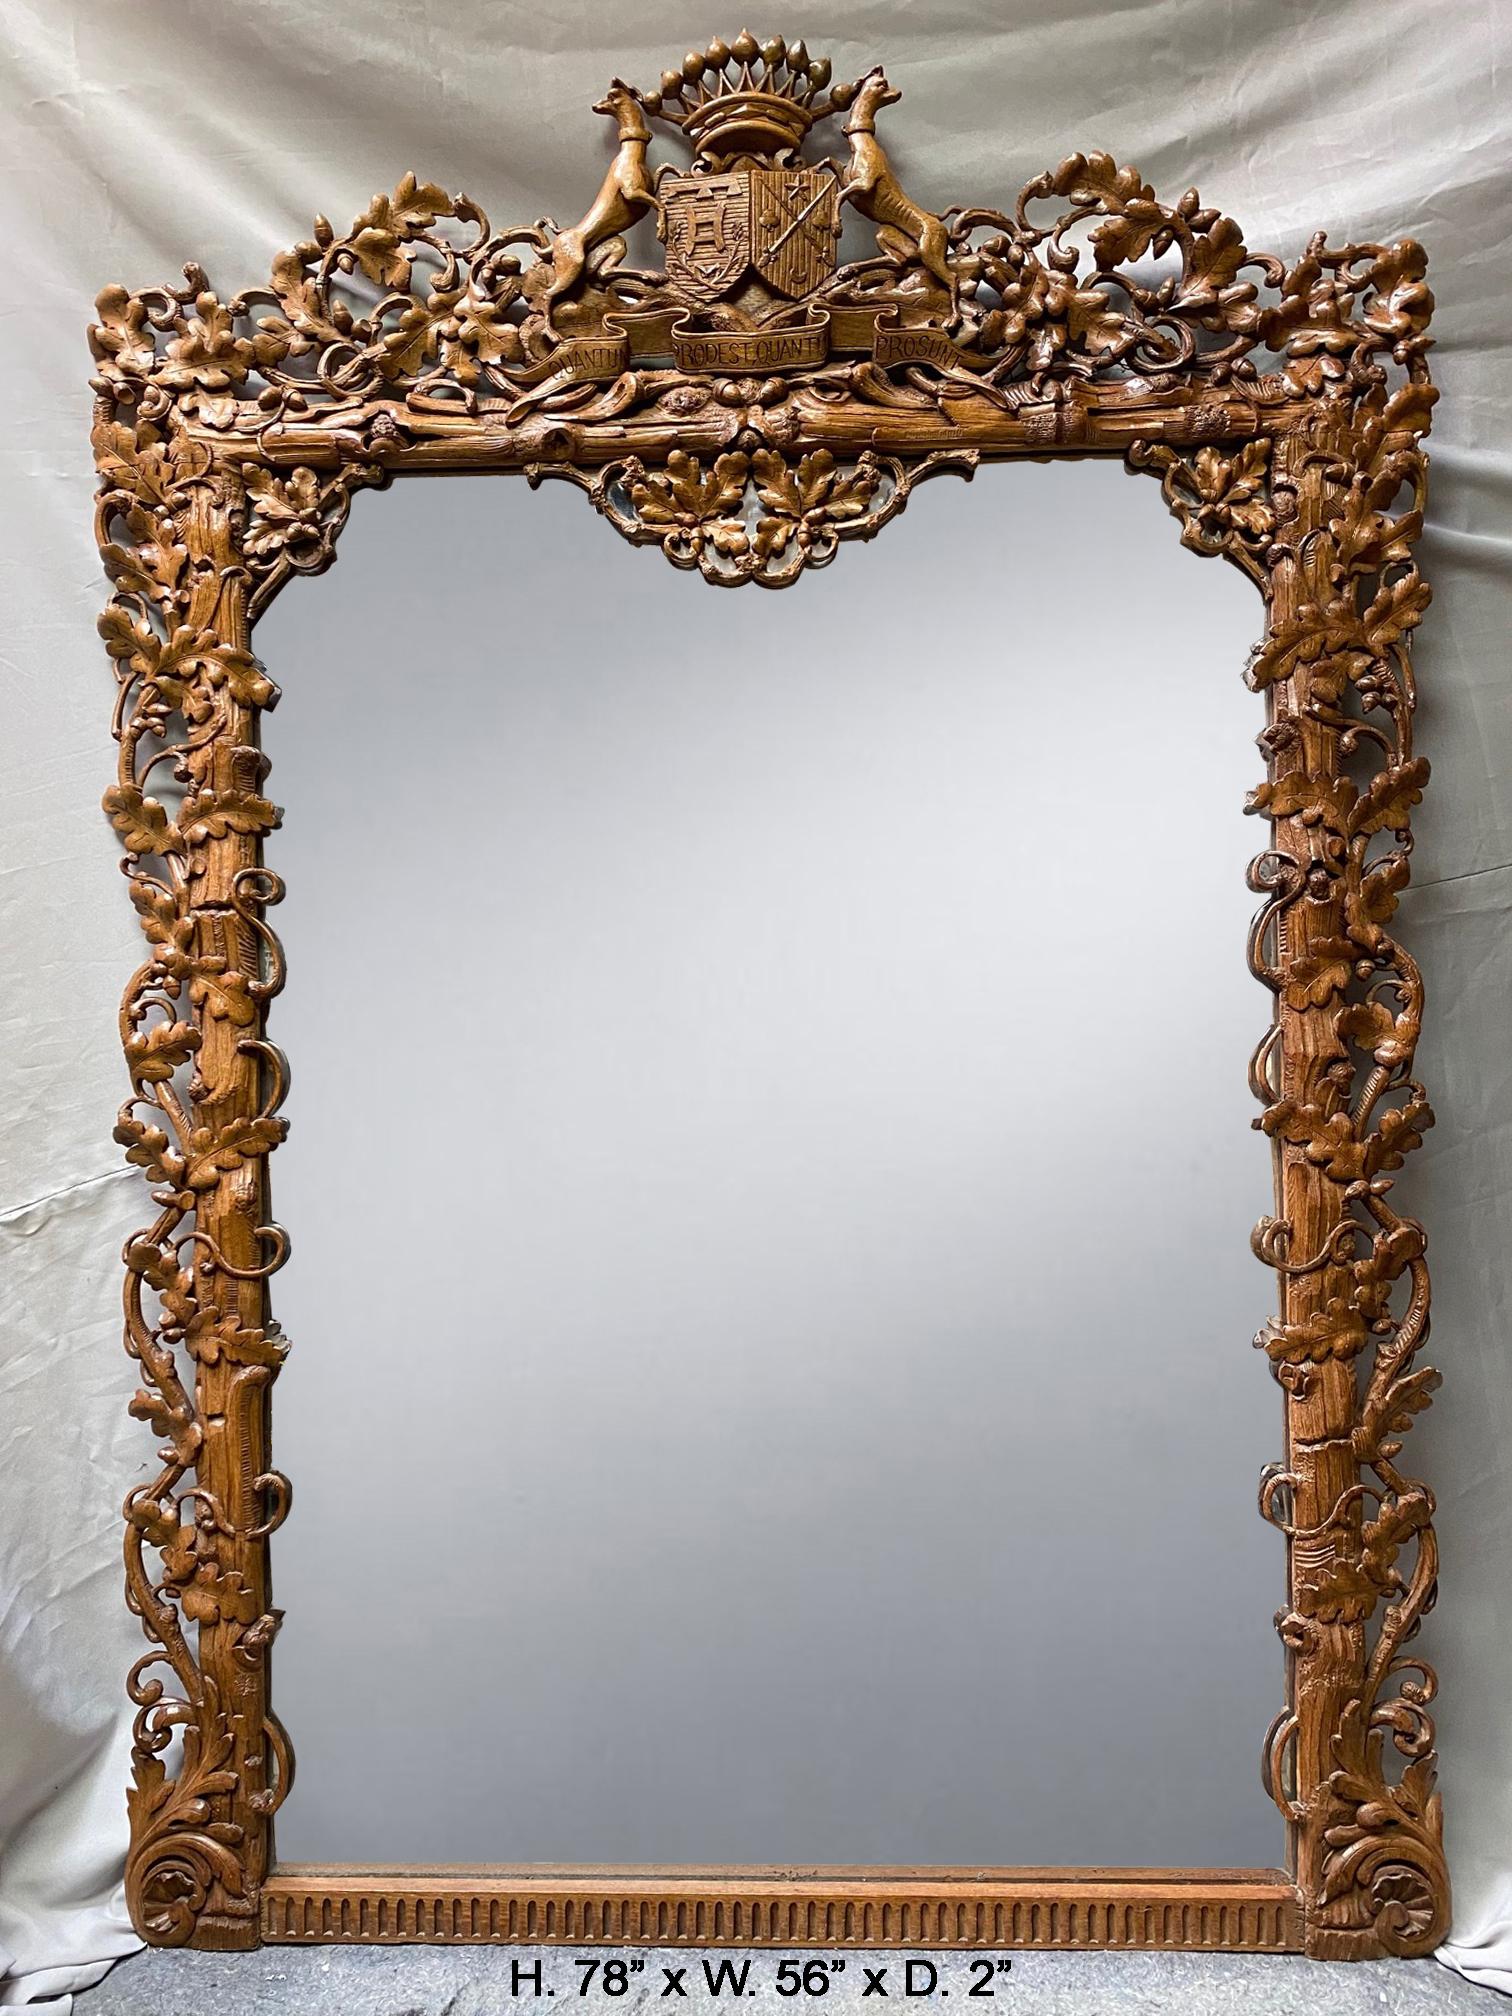 Miroir en chêne sculpté à la main, unique et sensationnel, datant du 19e siècle
Le miroir est surmonté d'une crête sculptée à la main, d'inspiration foliacée, centrée par un blason flanqué de deux chiens de chasse et surmonté d'une couronne,